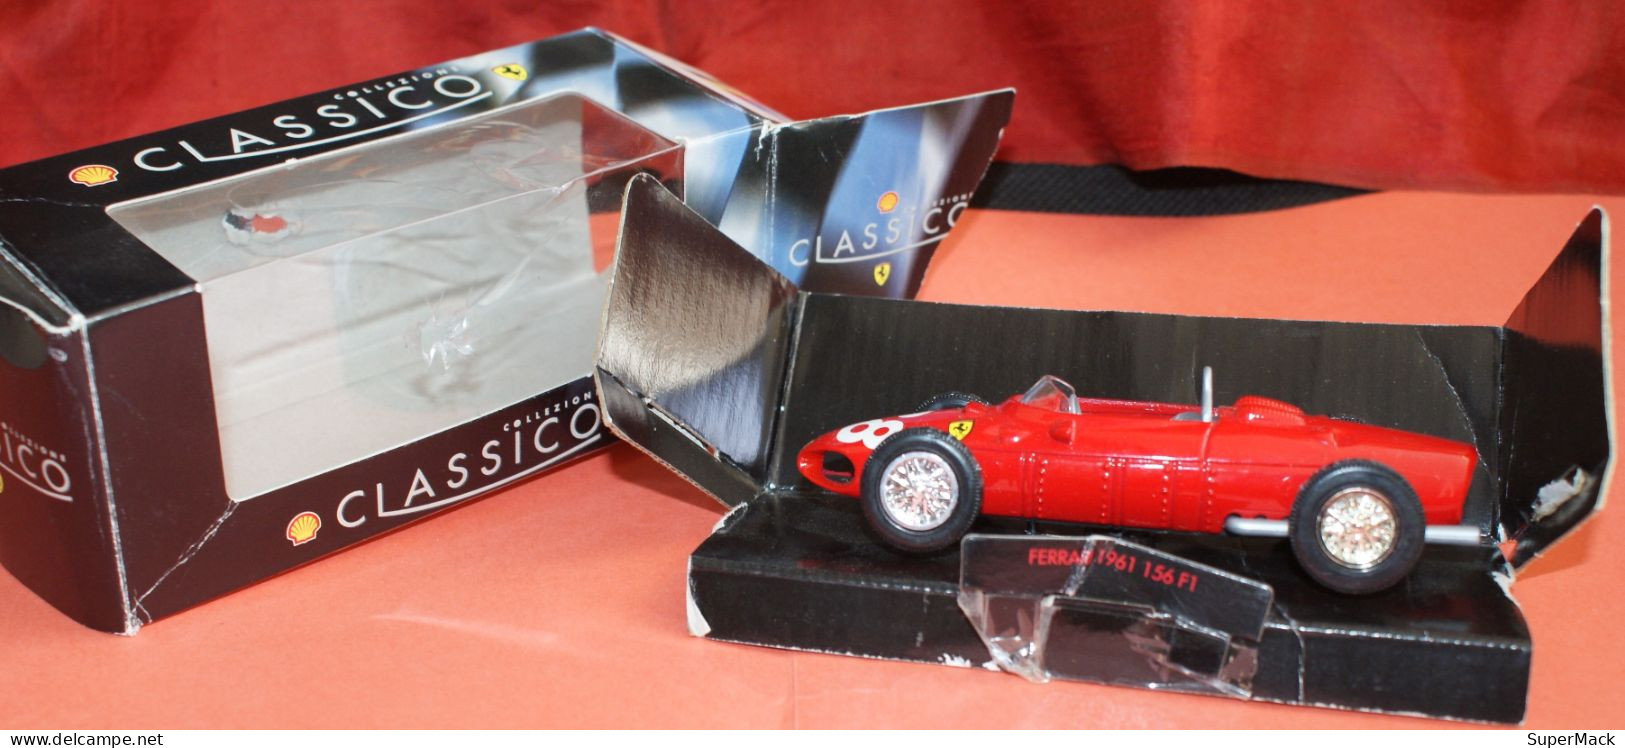 SHELL Classico Collezione - Ferrari 1961 156 F1 - Echelle 1:35 ### NEUVE ### - Schaal 1:32